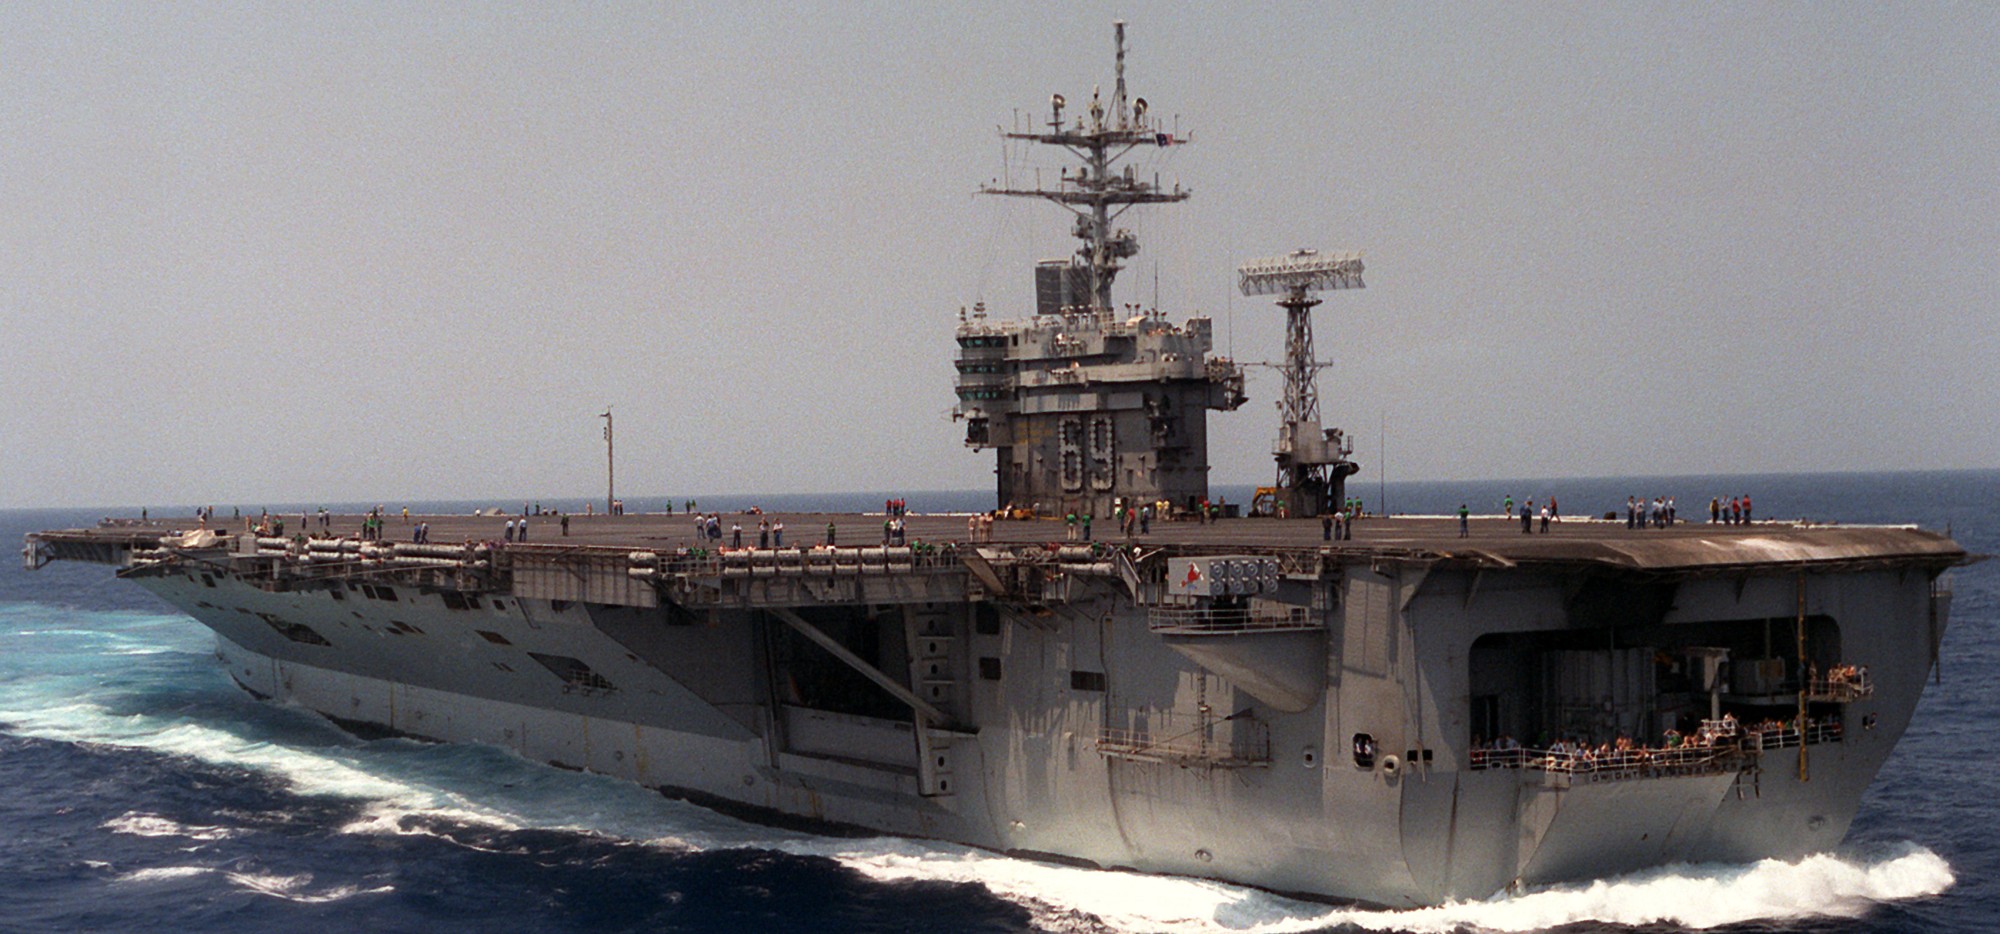 cvn-69 uss dwight d. eisenhower aircraft carrier us navy 319